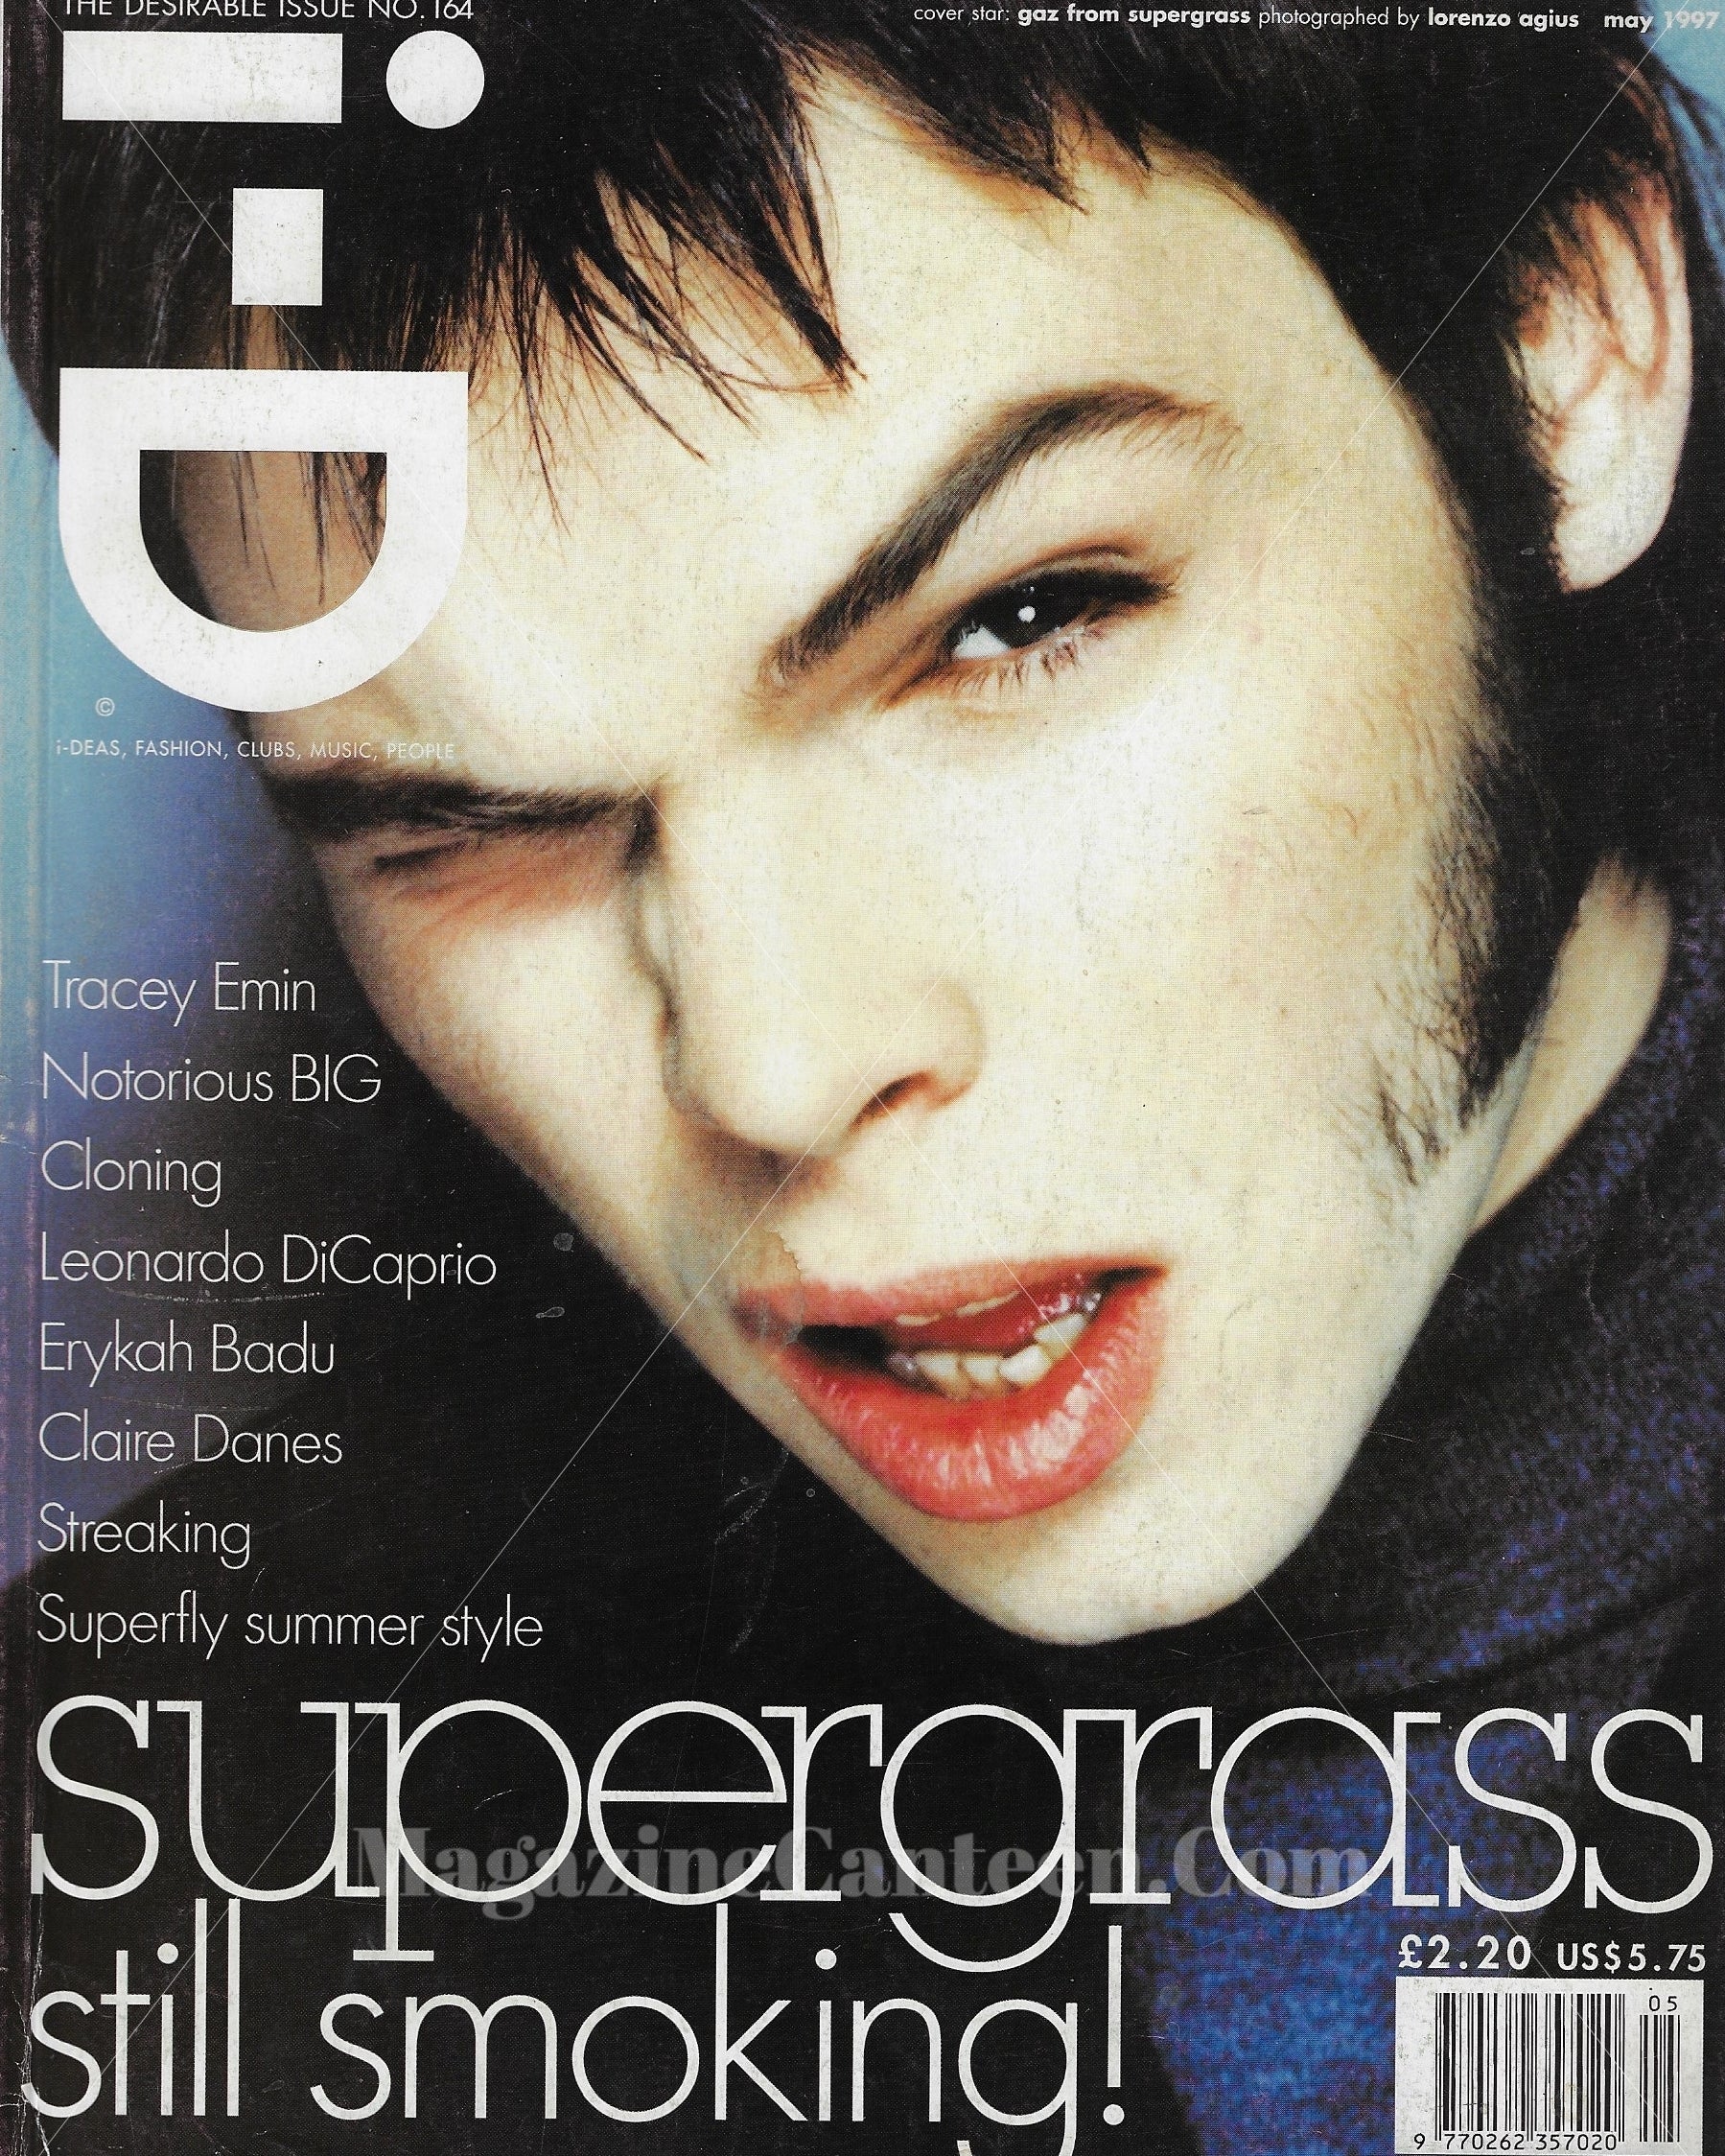 I-D Magazine 164 - Supergrass 1997